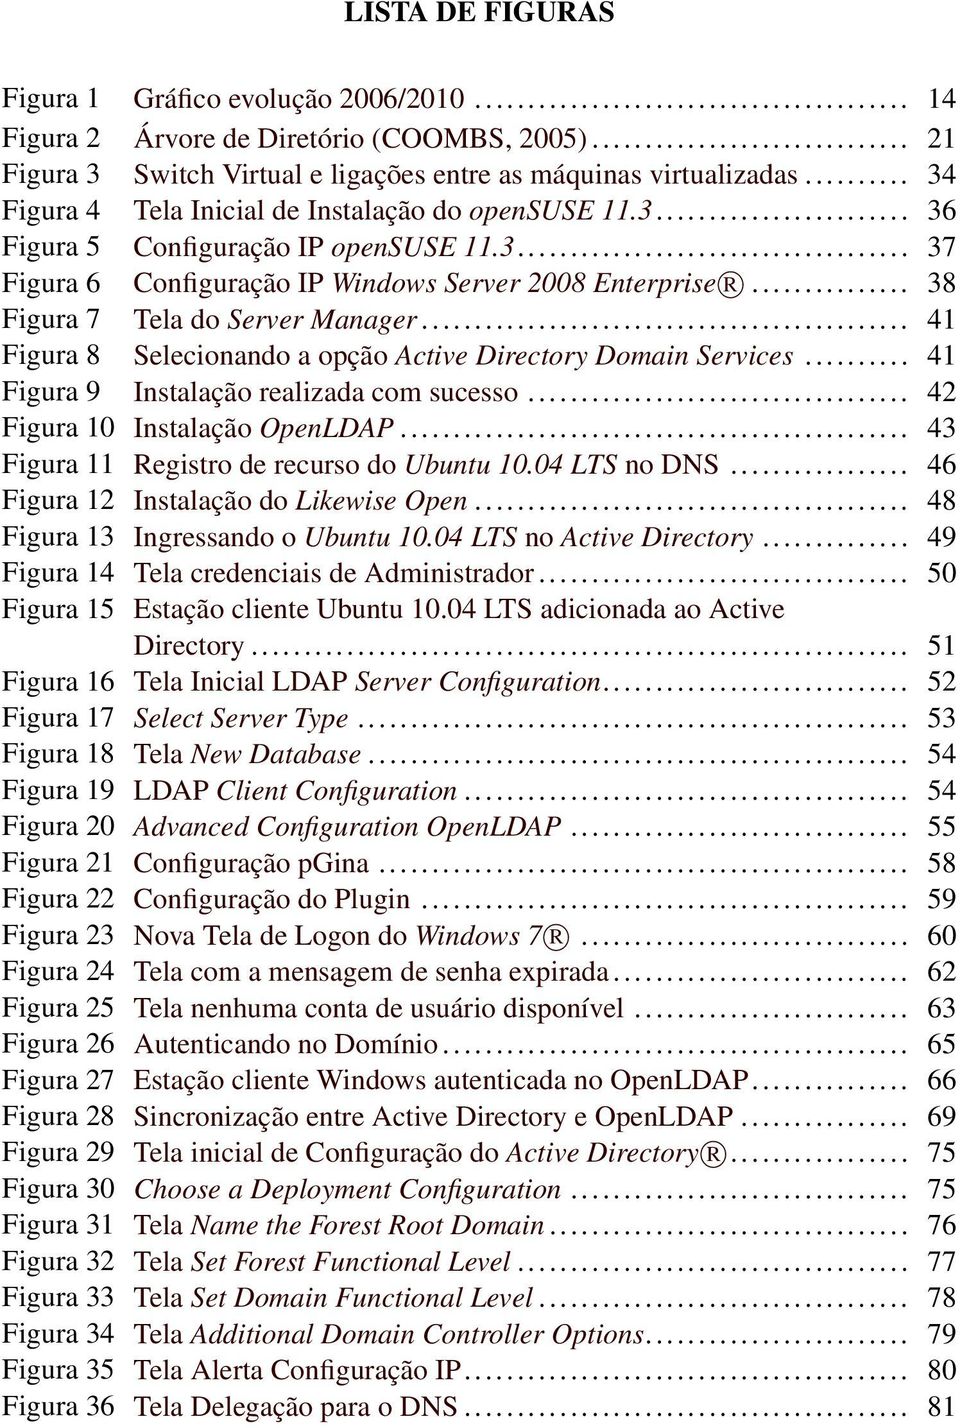 .. 38 Figura 7 Tela do Server Manager... 41 Figura 8 Selecionando a opção Active Directory Domain Services... 41 Figura 9 Instalação realizada com sucesso... 42 Figura 10 Instalação OpenLDAP.